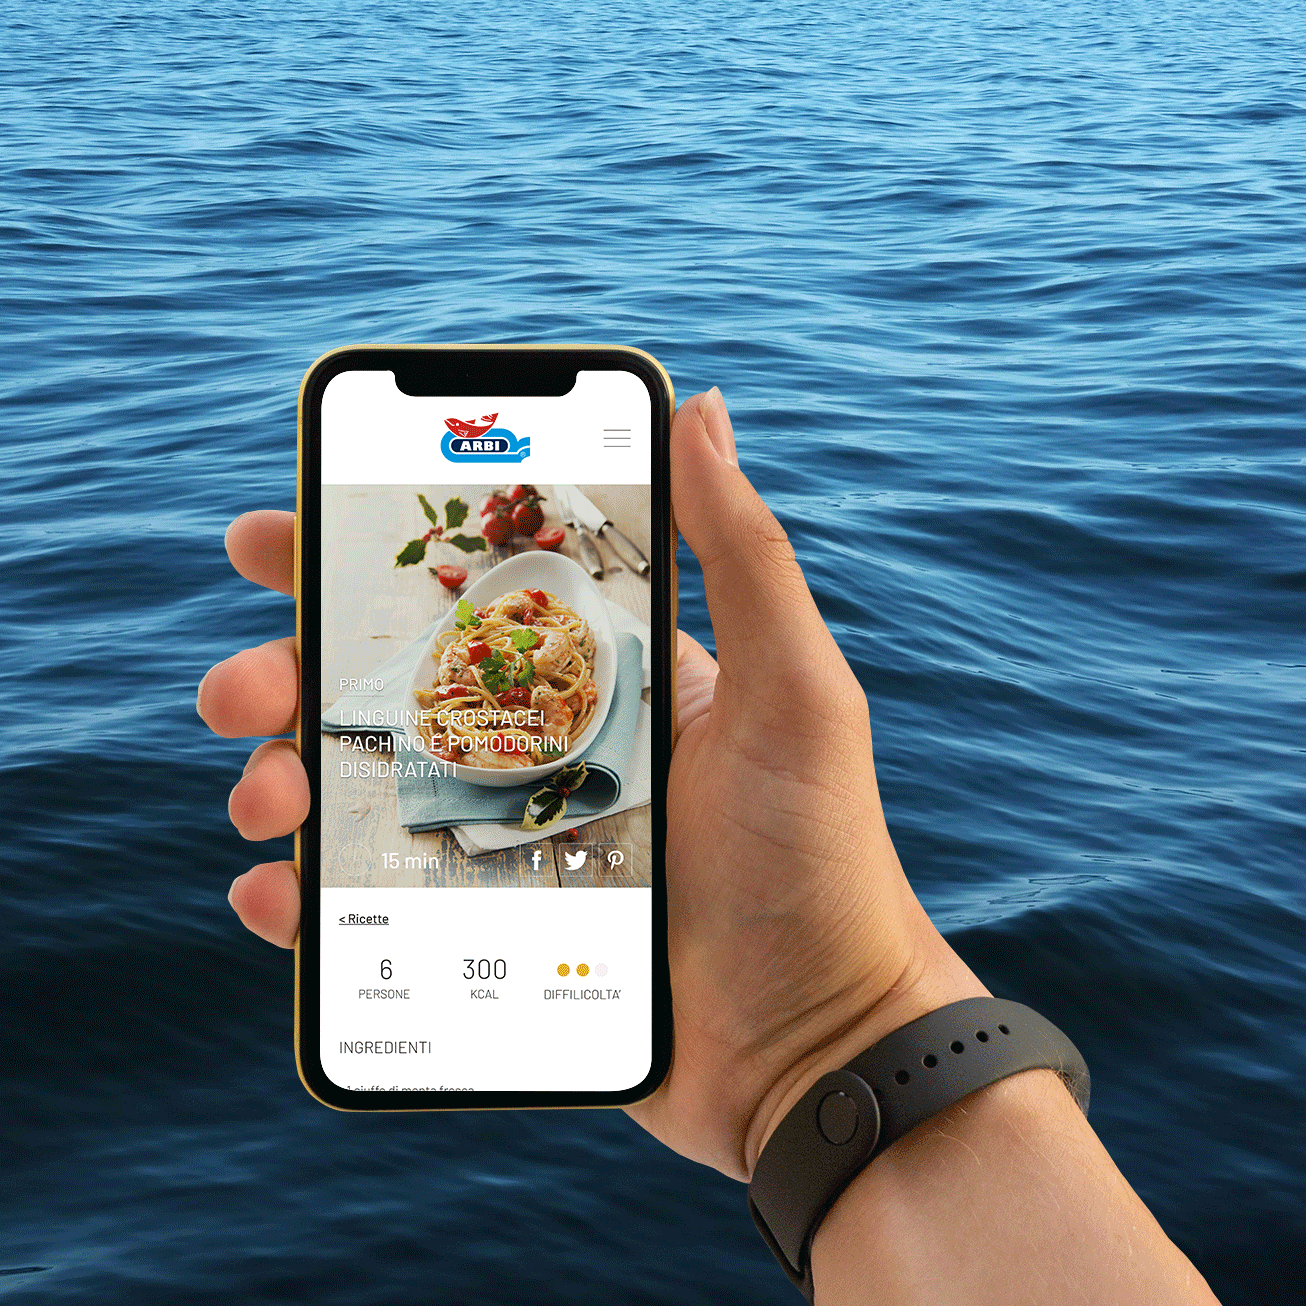 Davanti al mare, una mano regge uno smartphone che alterna diverse immagini del sito di Arbi.